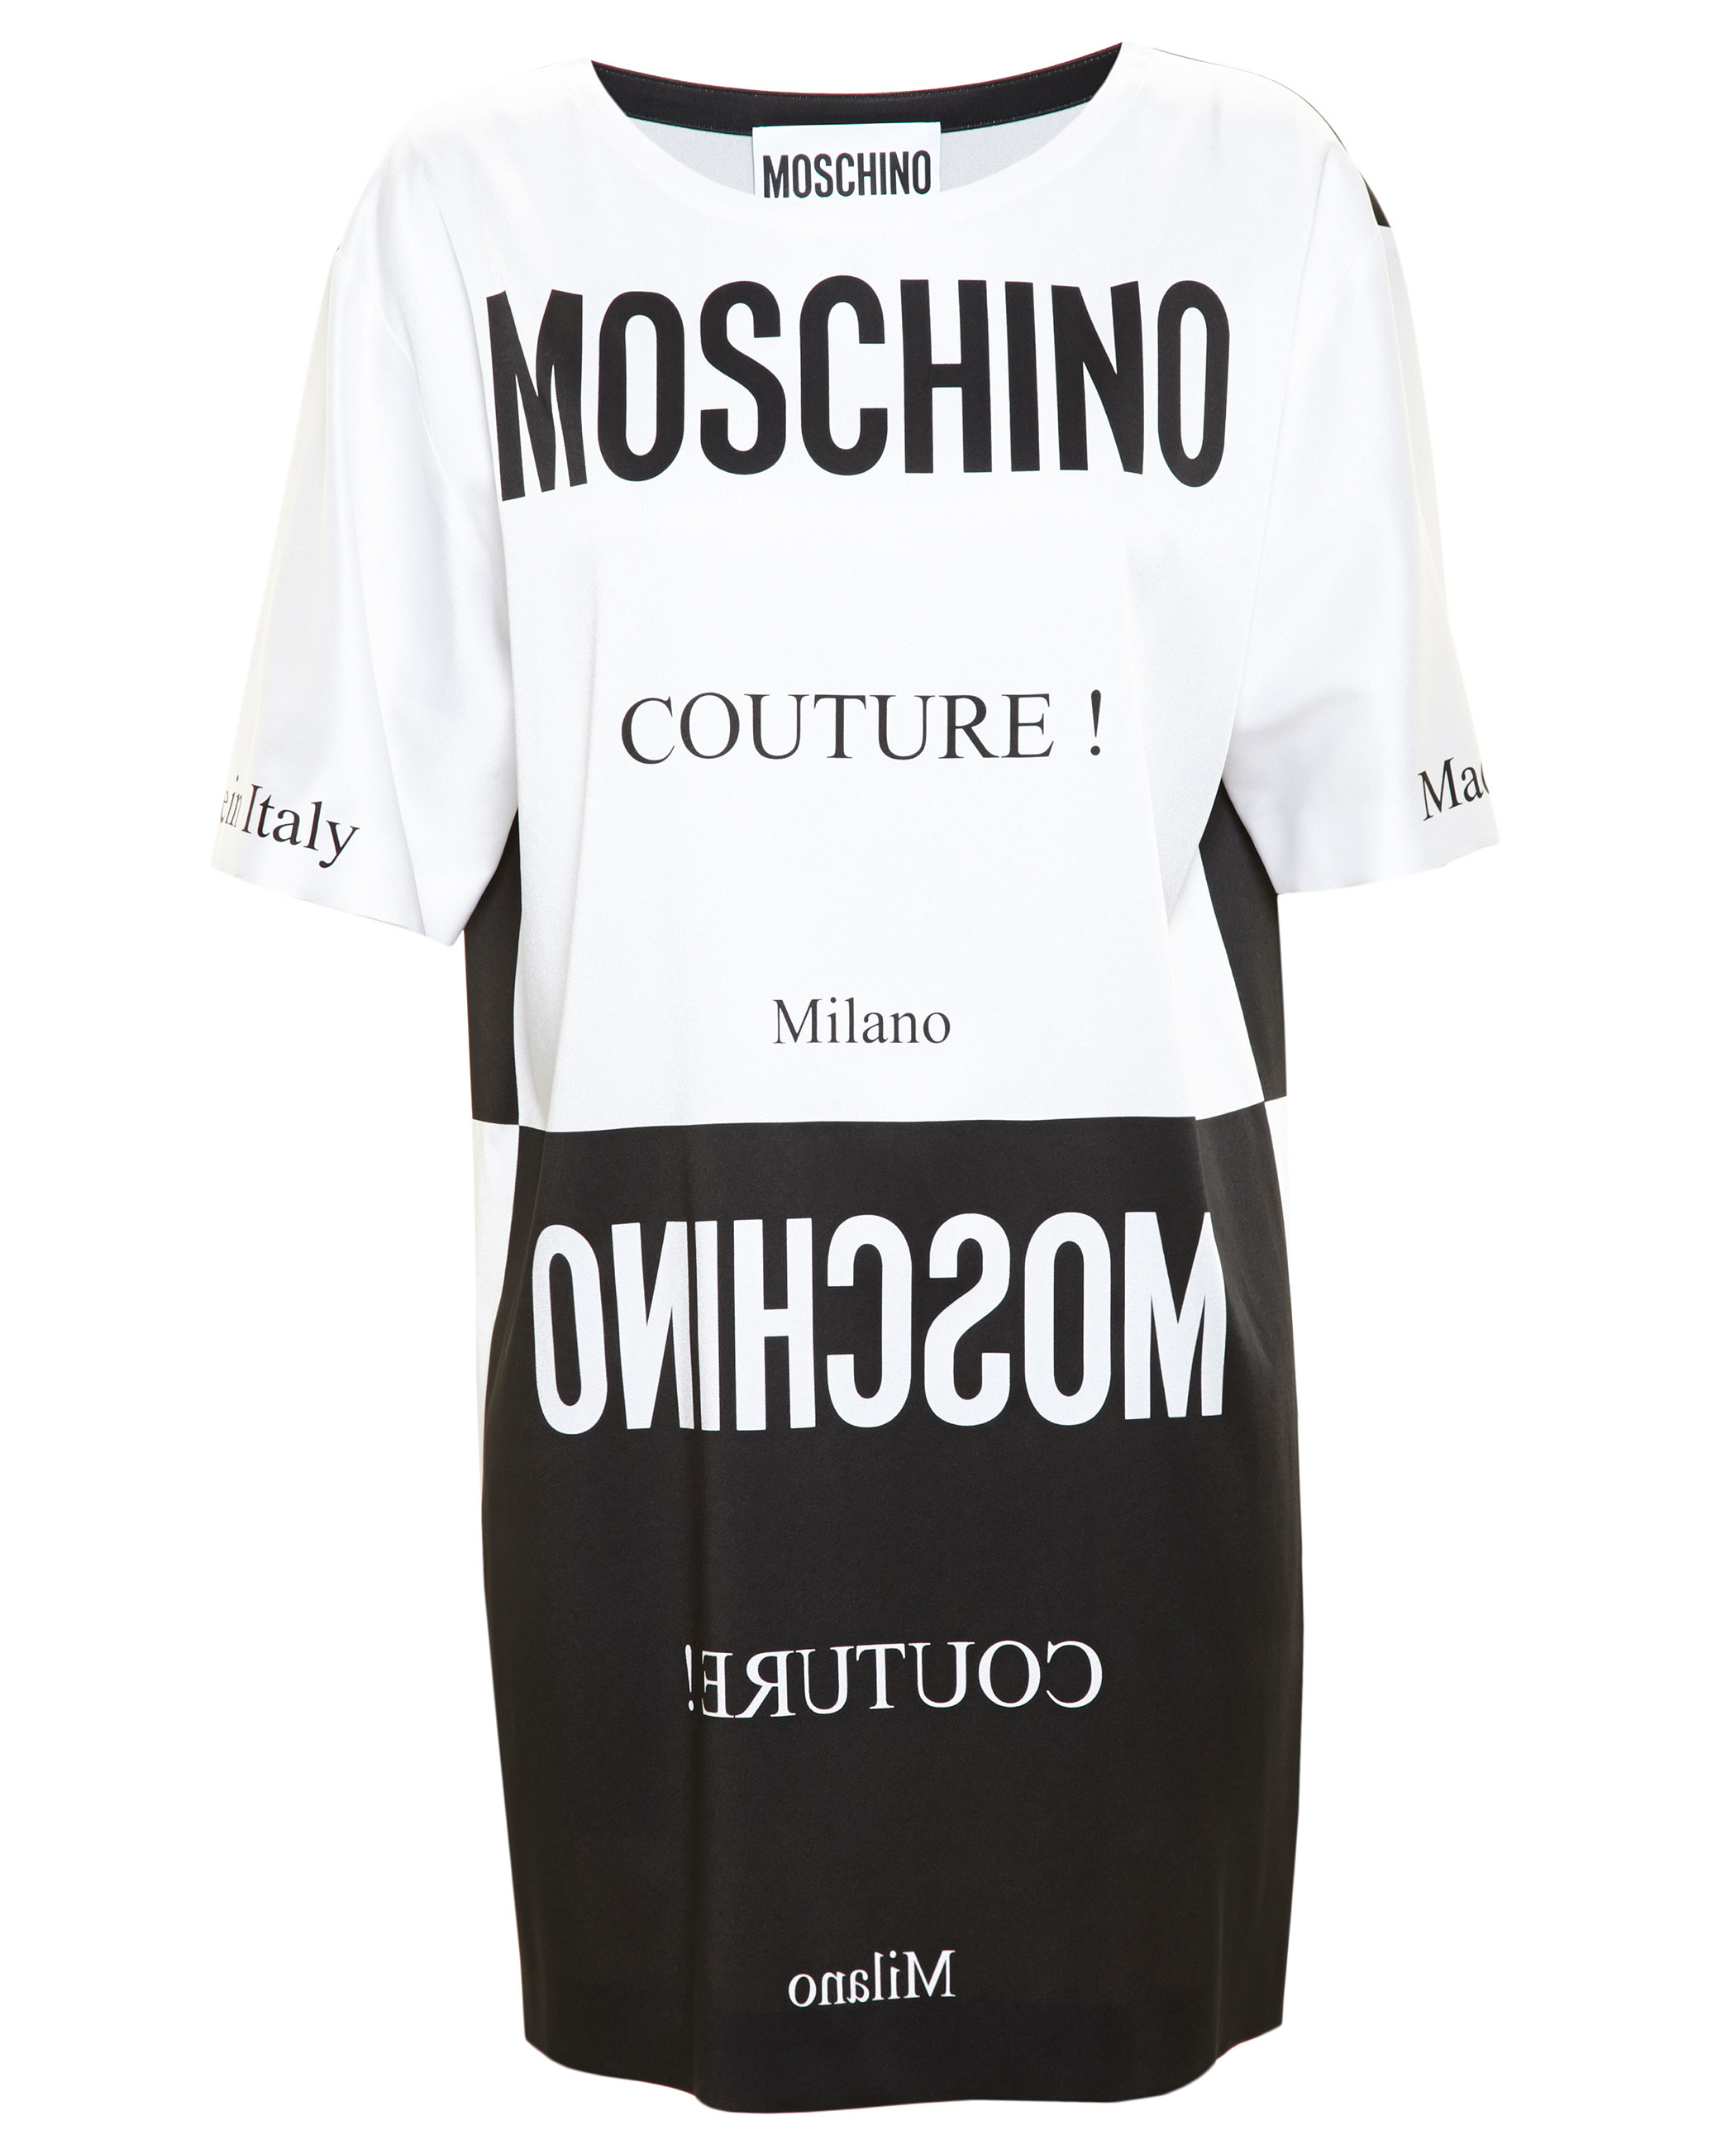 moschino black and white dress